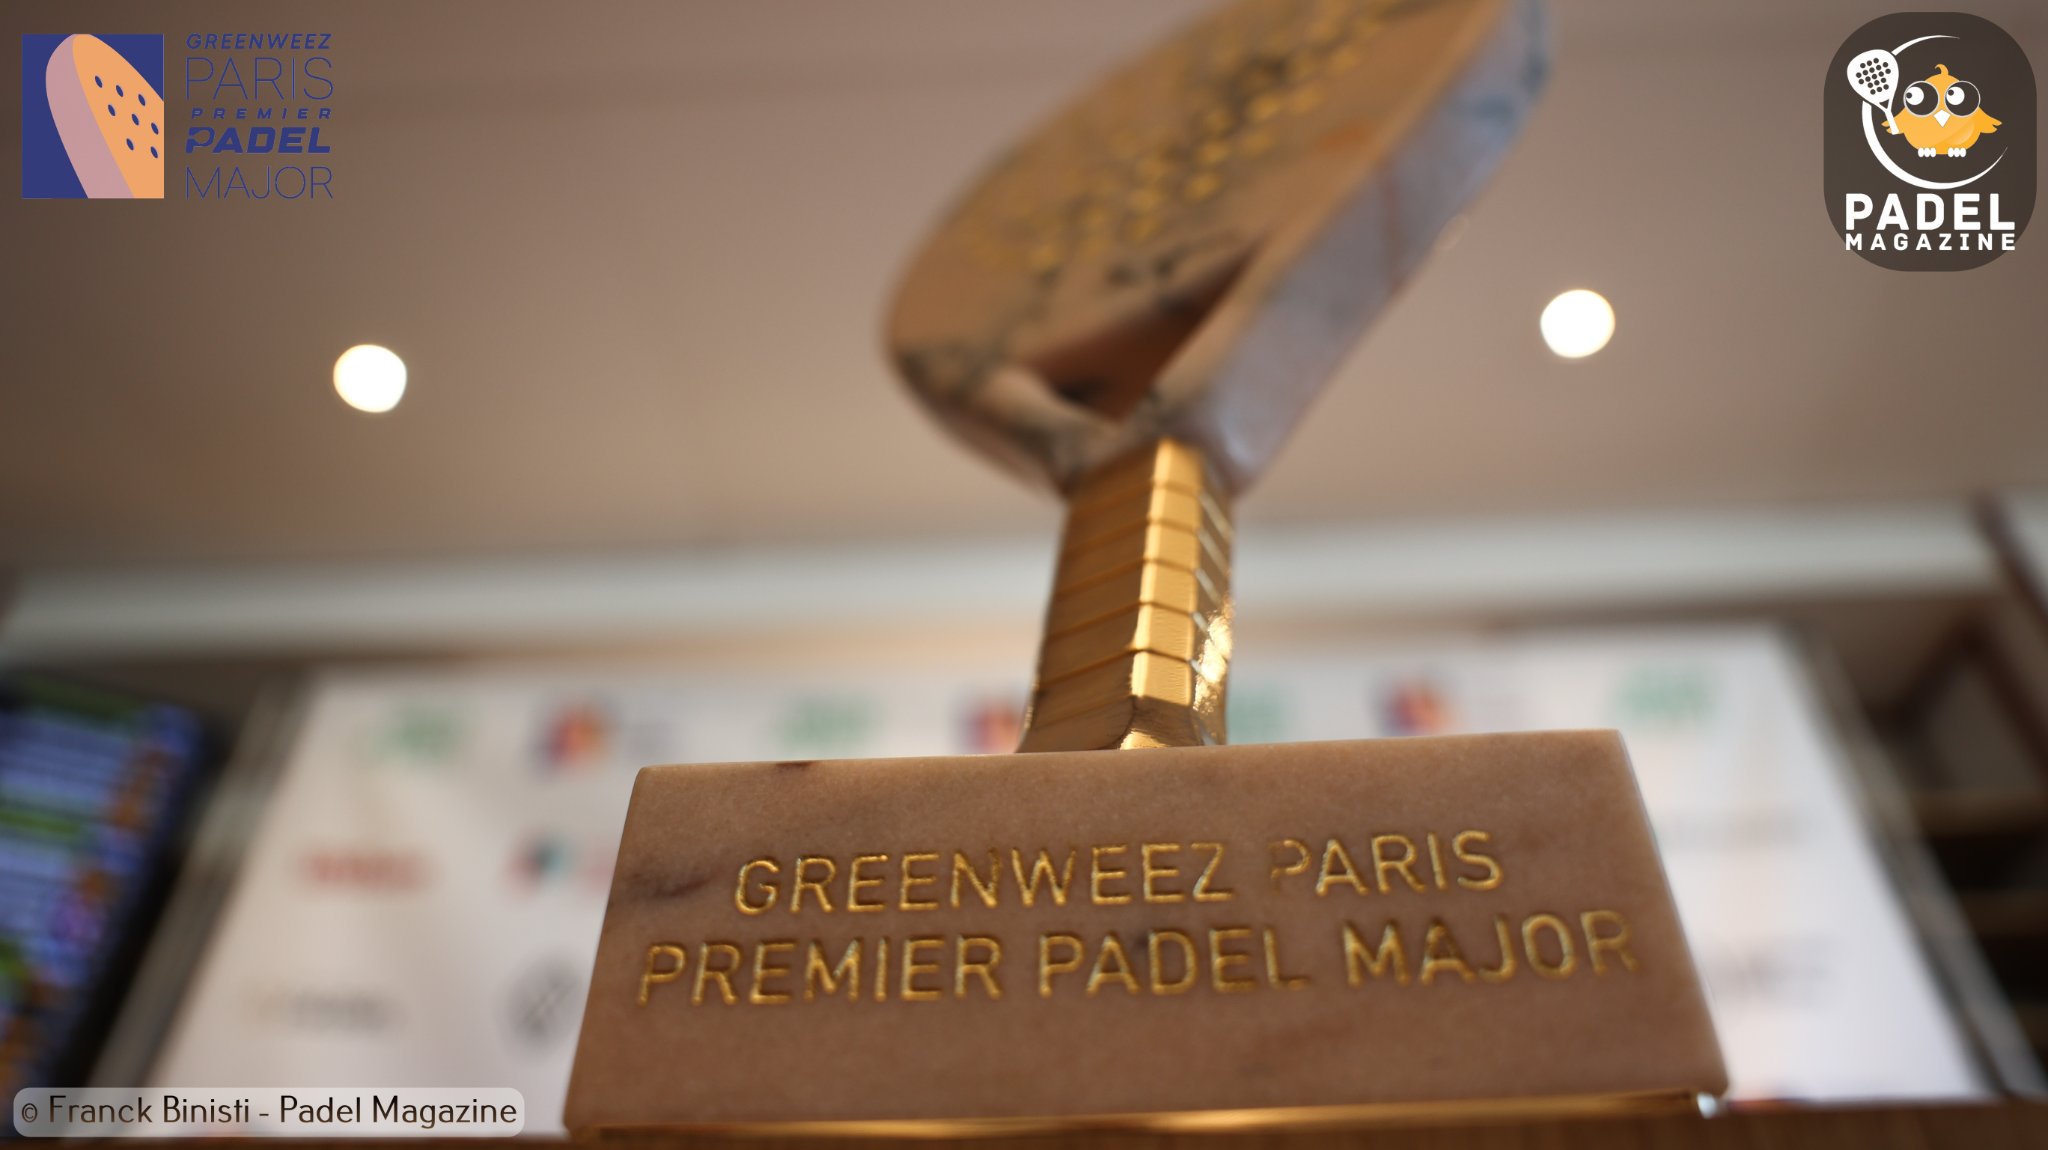 Greenweez Paris Premier Padel Major : uitslagen van dinsdag